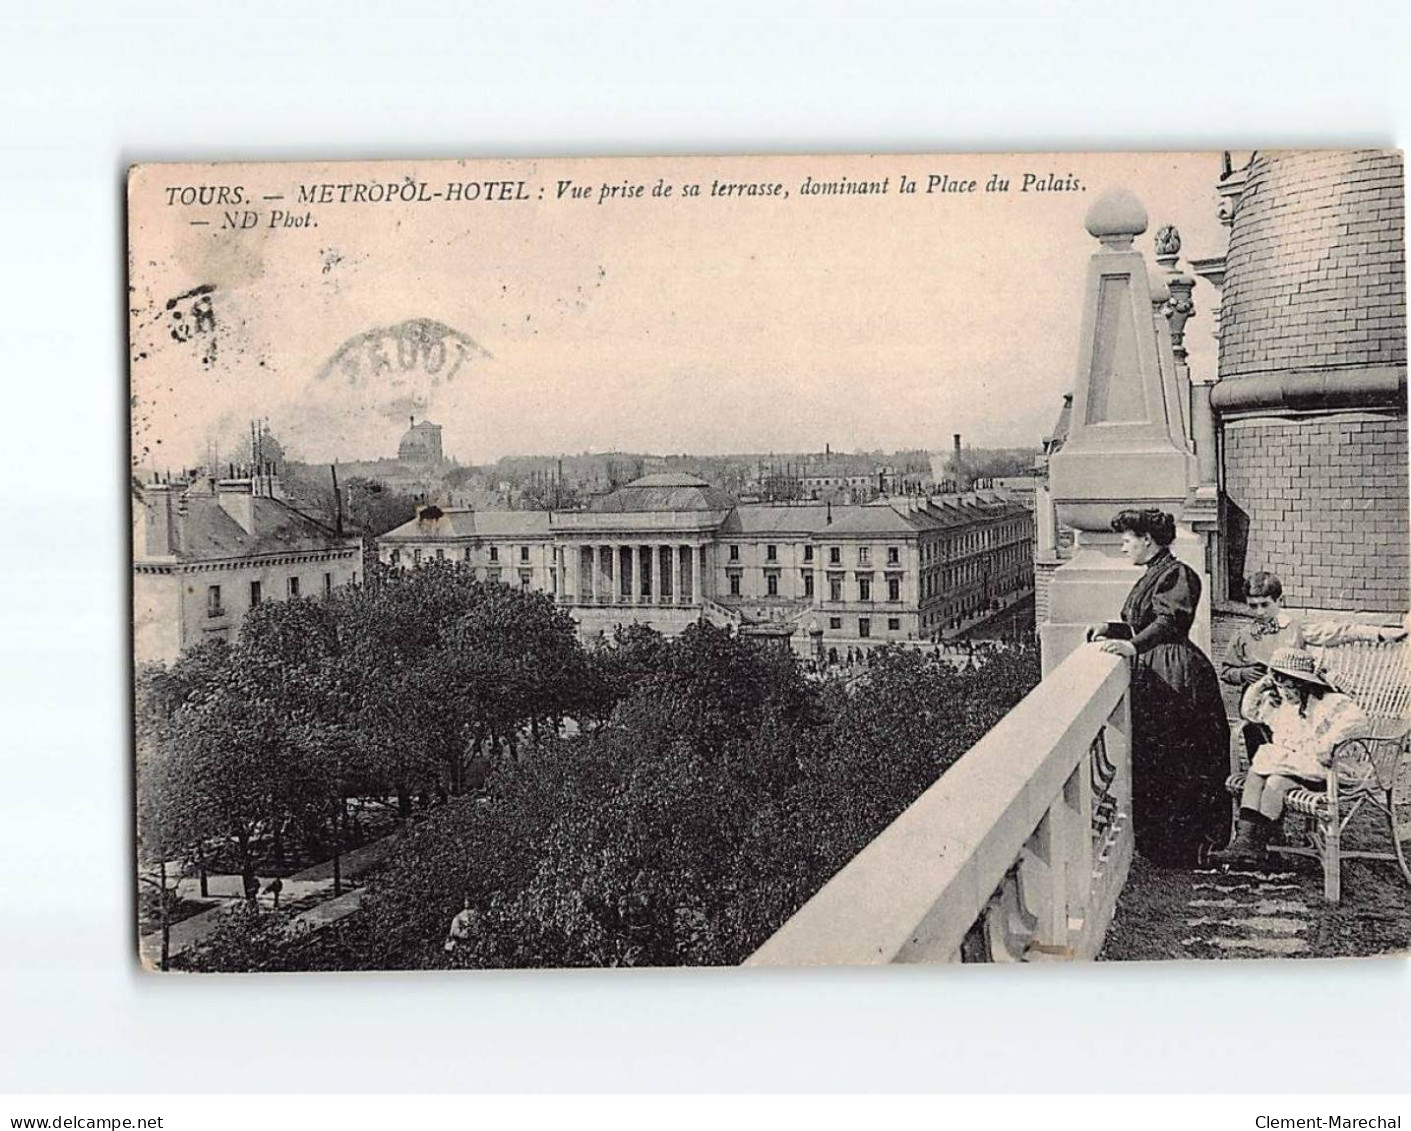 TOURS : Métropol-Hôtel, Vue Prise De Sa Terrasse, Dominant La Place Du Palais - état - Tours